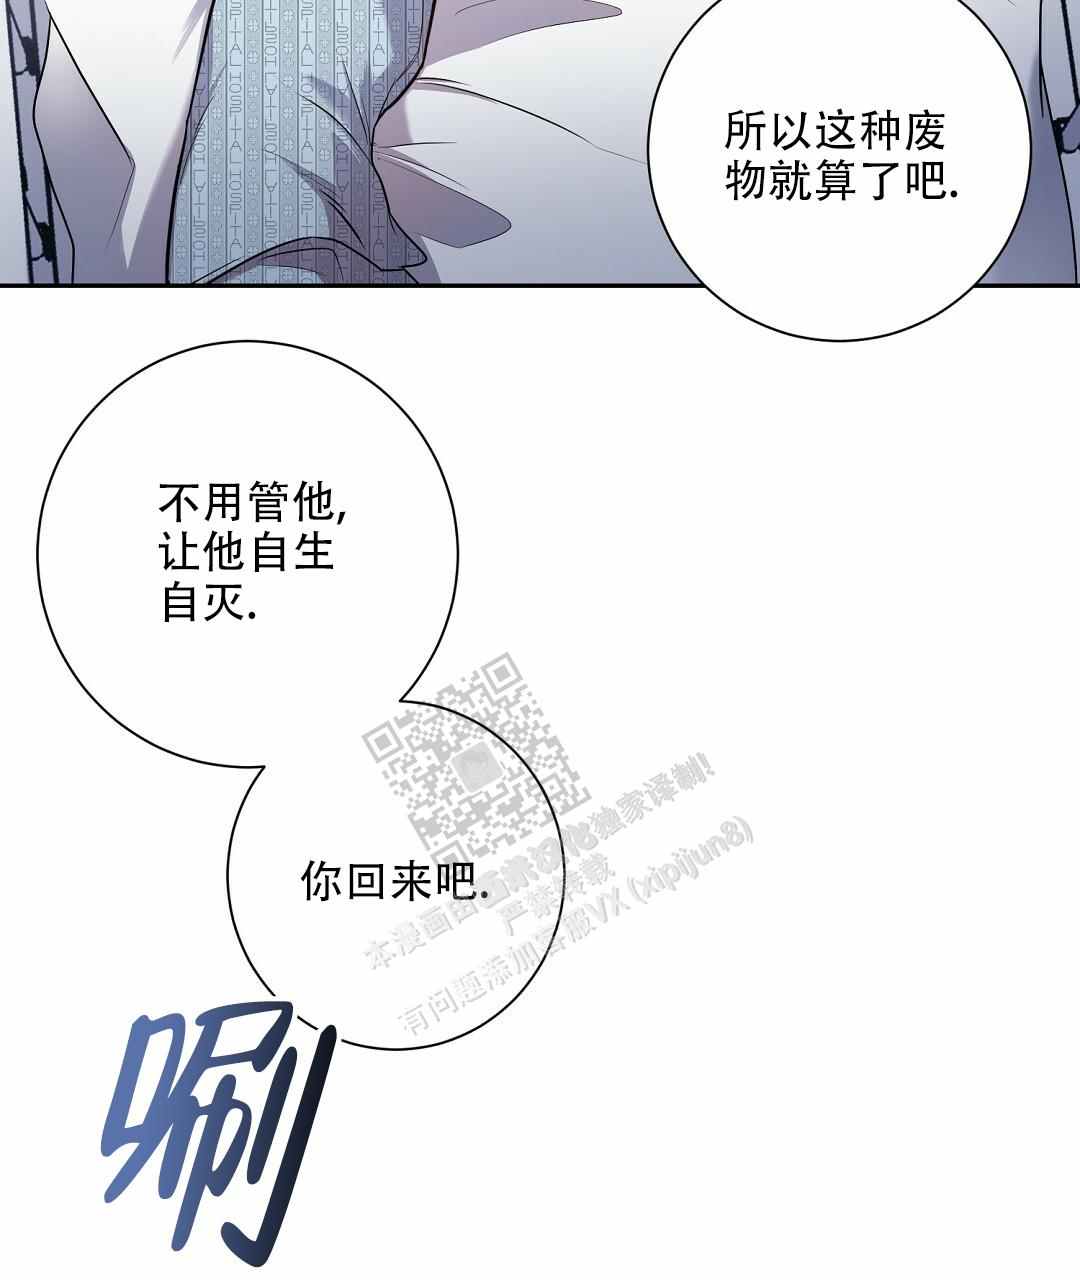 啵乐官网免费漫画32